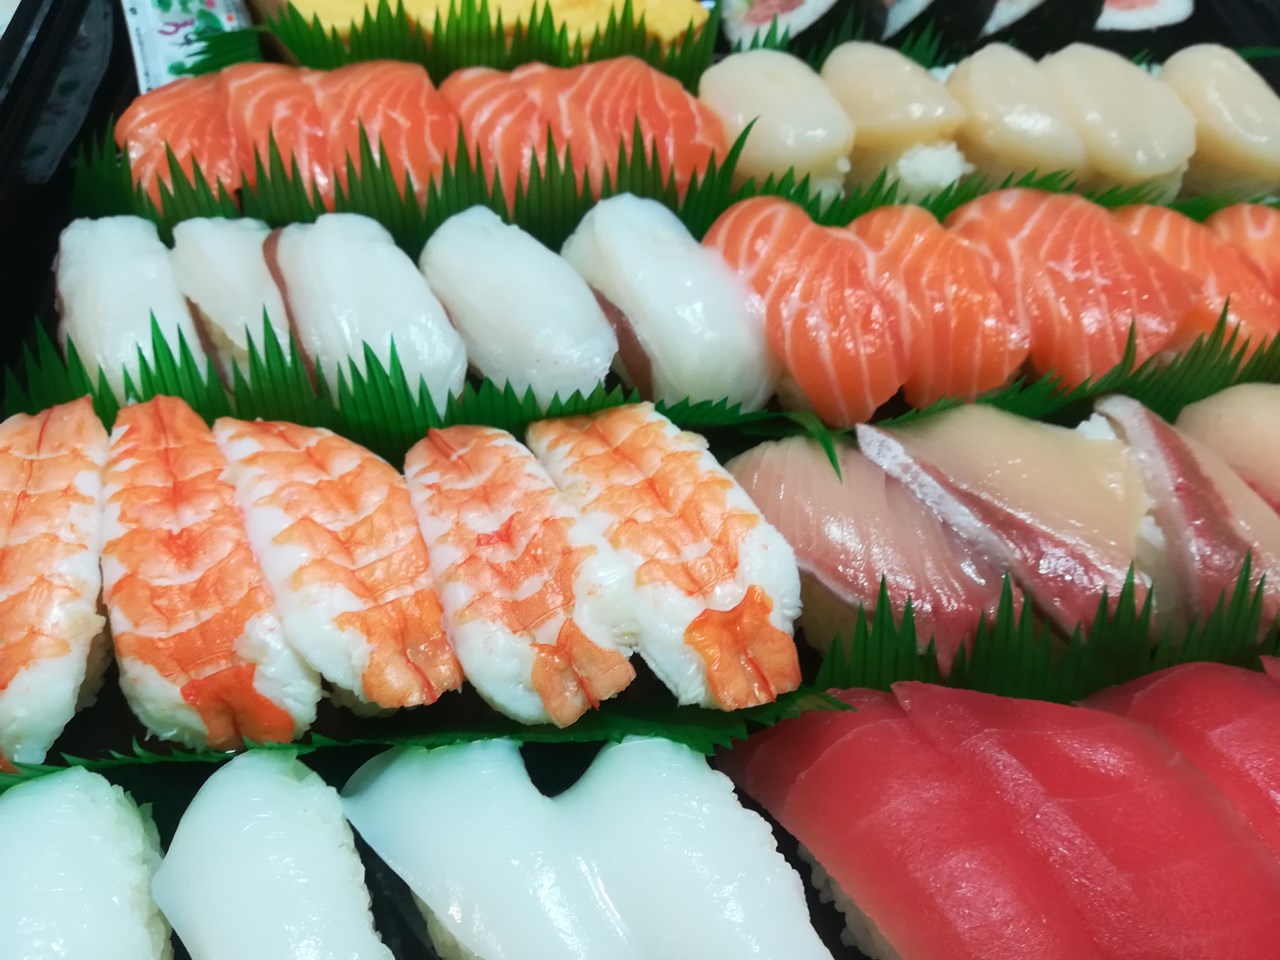 コストコ寿司48貫 このボリューム感で3000円以下 Sushi Costco 48 Buah Dan Harga Rendah Japan Indonesia Blog